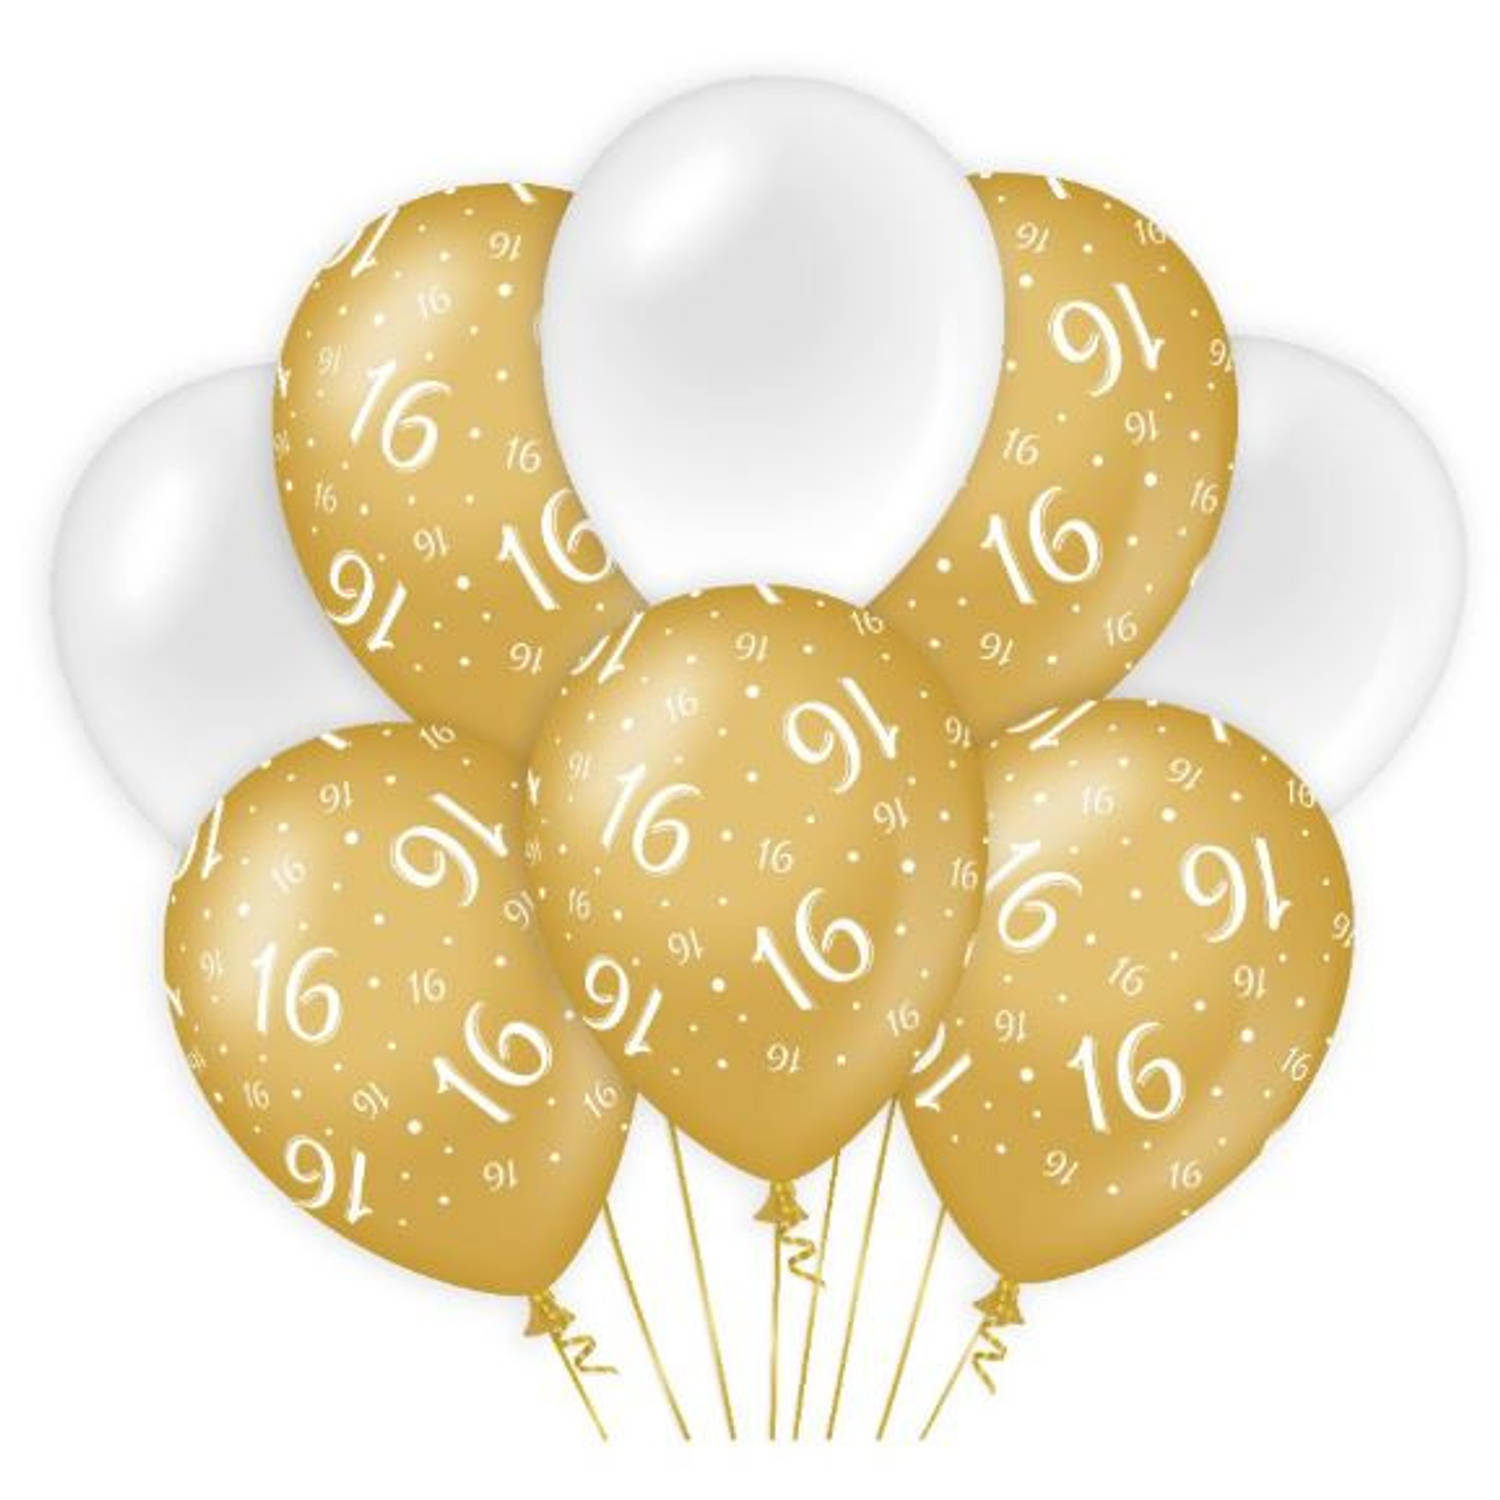 Paper Dreams ballonnen sweet 16 meisjes latex goud/wit